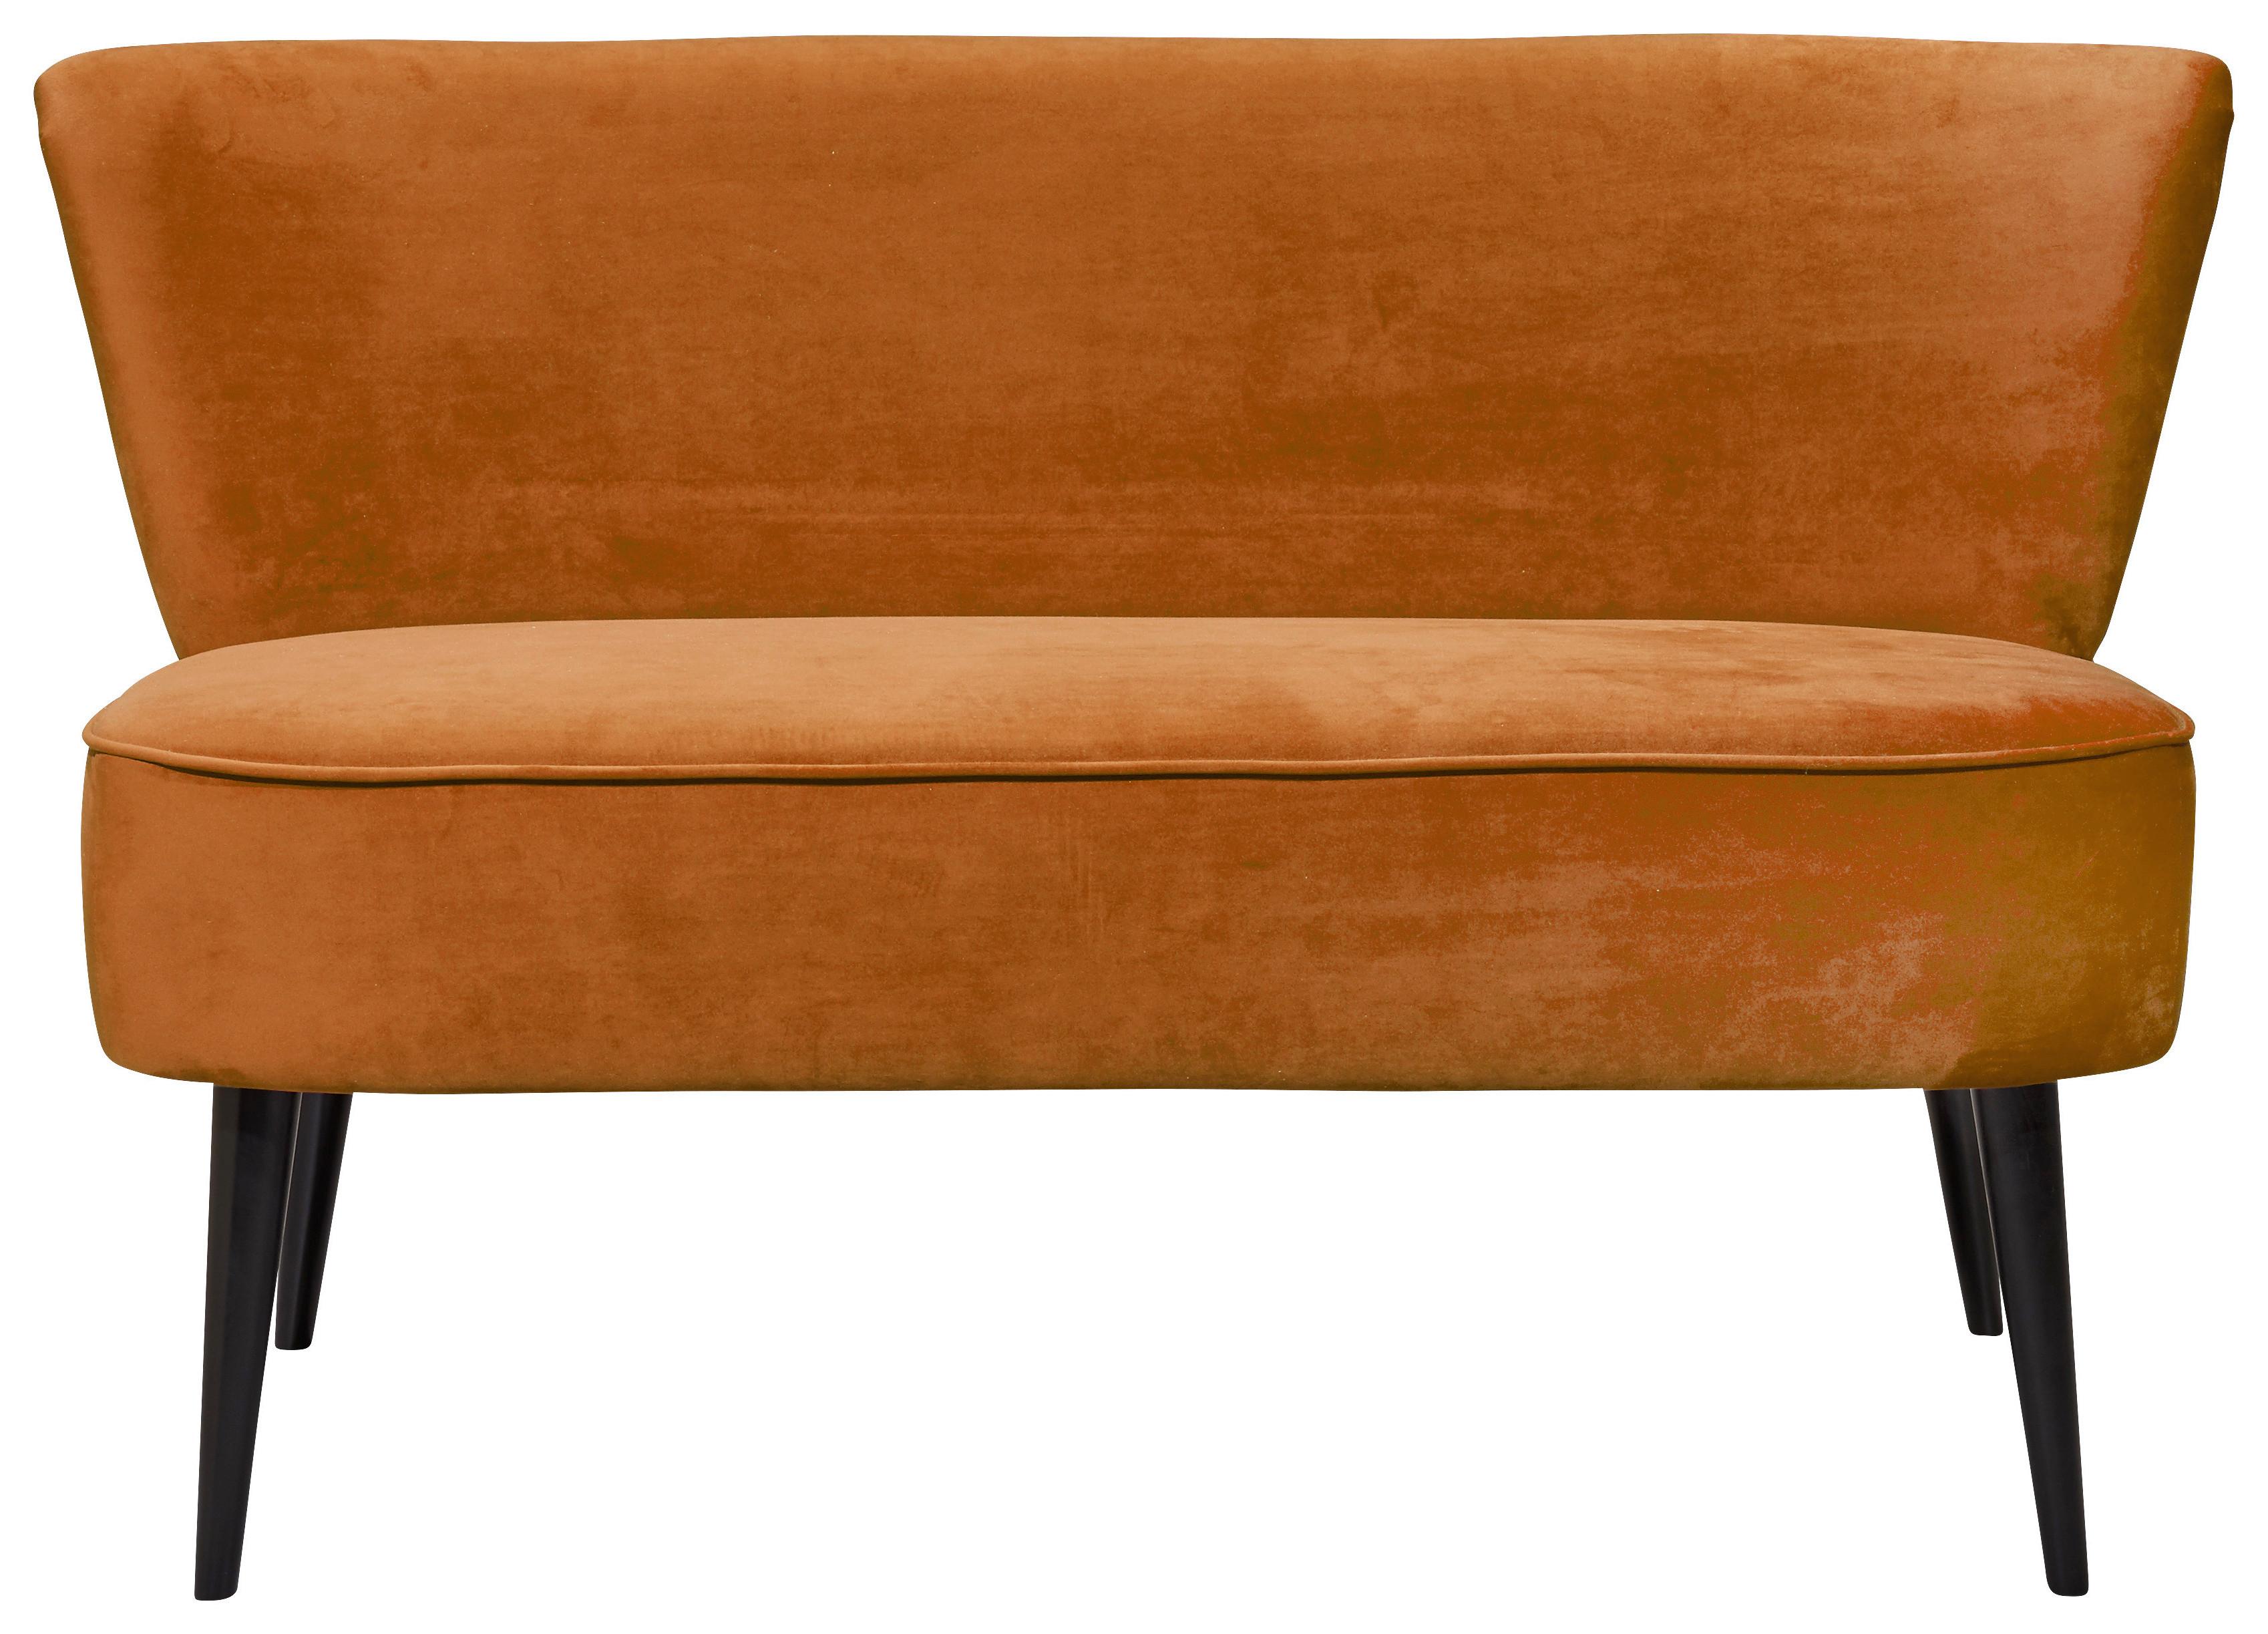 Sitzbank mit Lehne Gepolstert Samt Gold Lord B: 179 cm - Goldfarben/Schwarz, Trend, Holzwerkstoff/Textil (179/83/75cm) - MID.YOU